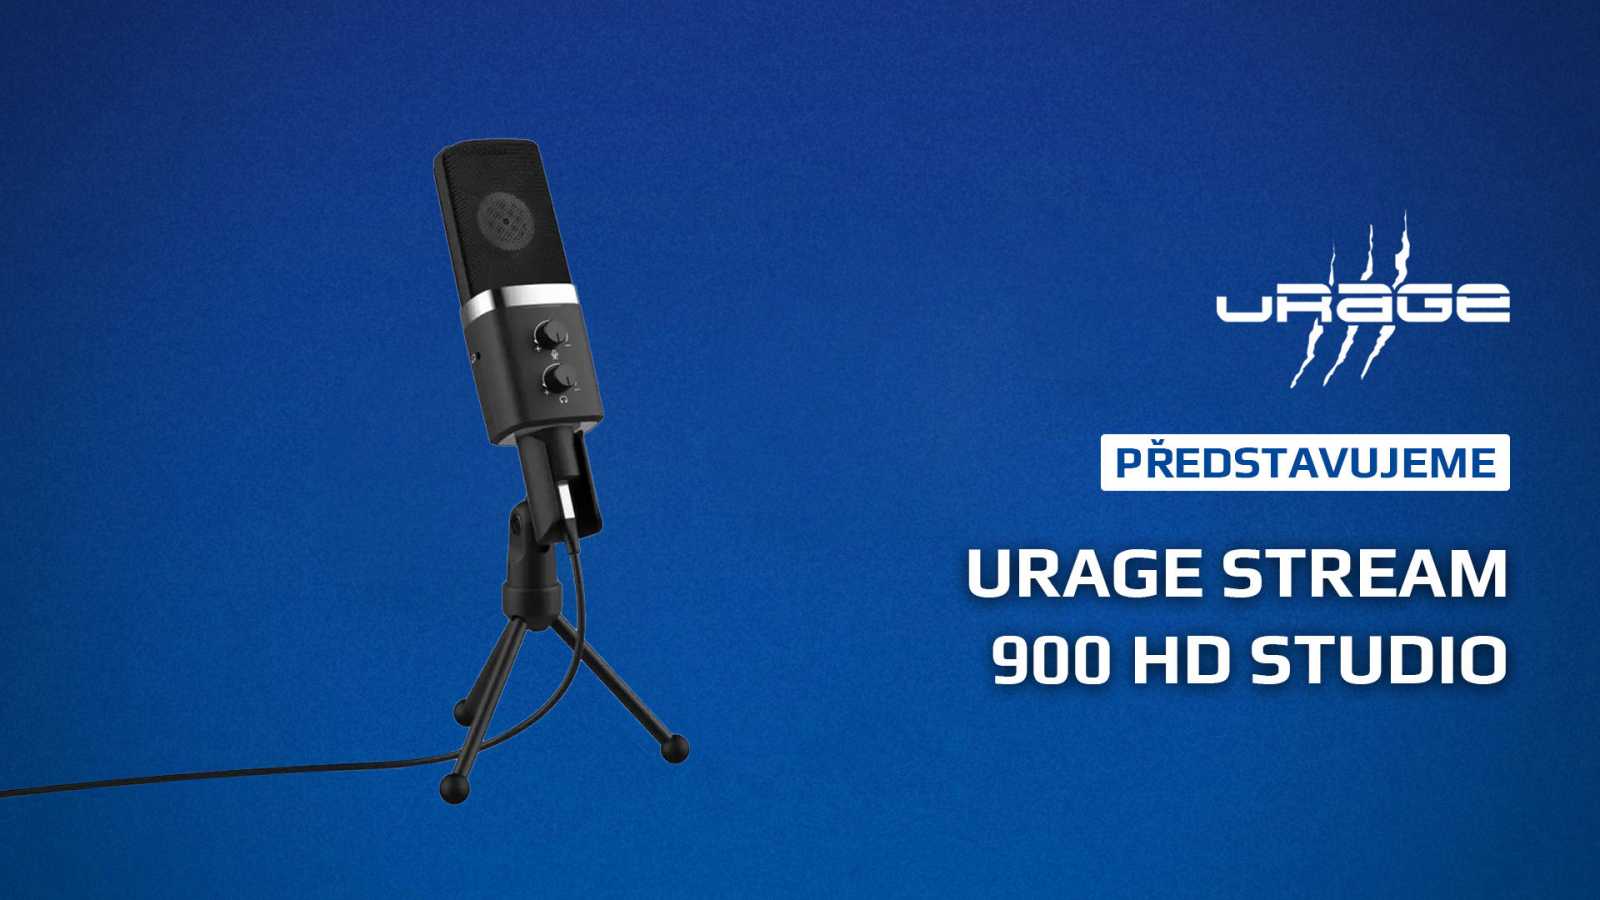 Posuňte kvalitu nahrávaného zvuku na novou úroveň s mikrofonem Stream 900 HD Studio od uRage